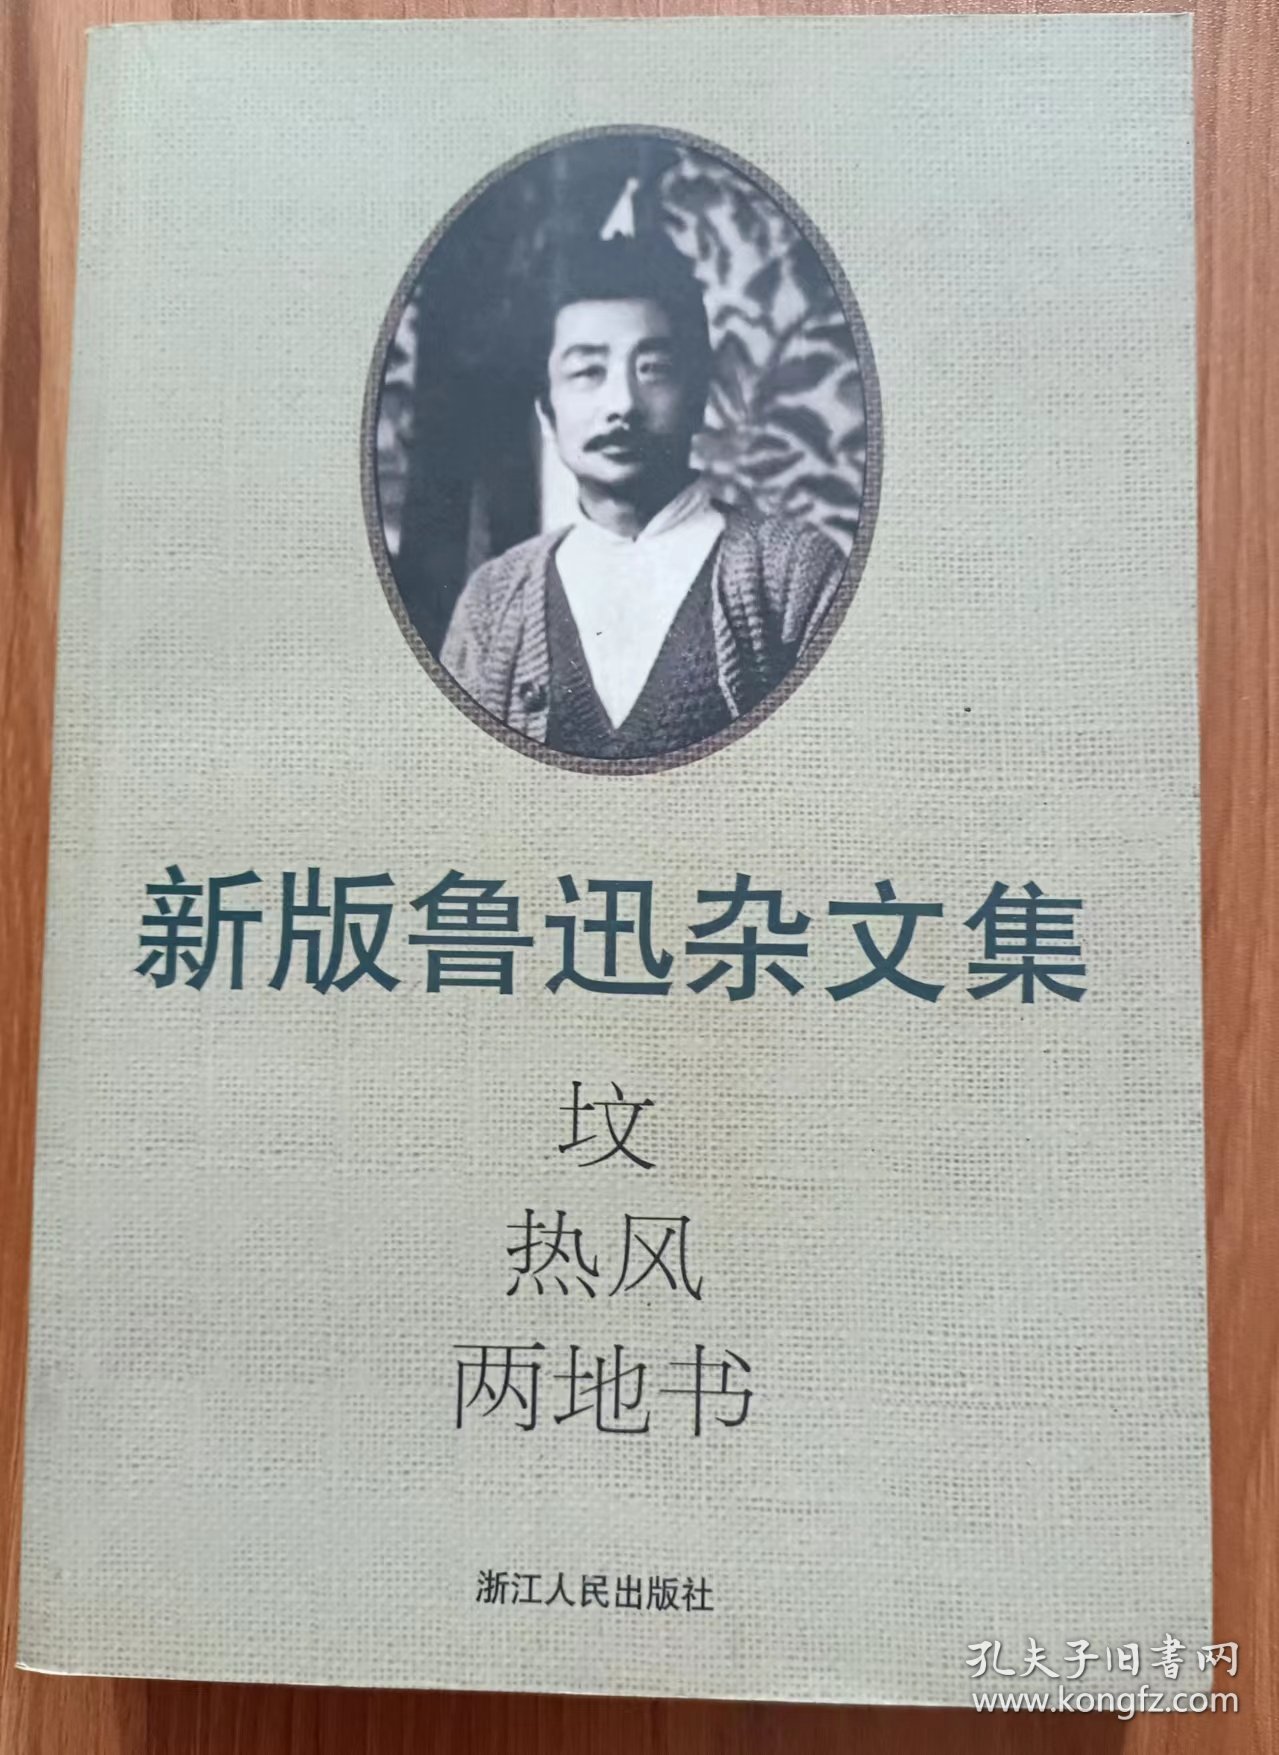 坟·热风·两地书(新版鲁迅杂文集),鲁迅著,浙江人民出版社